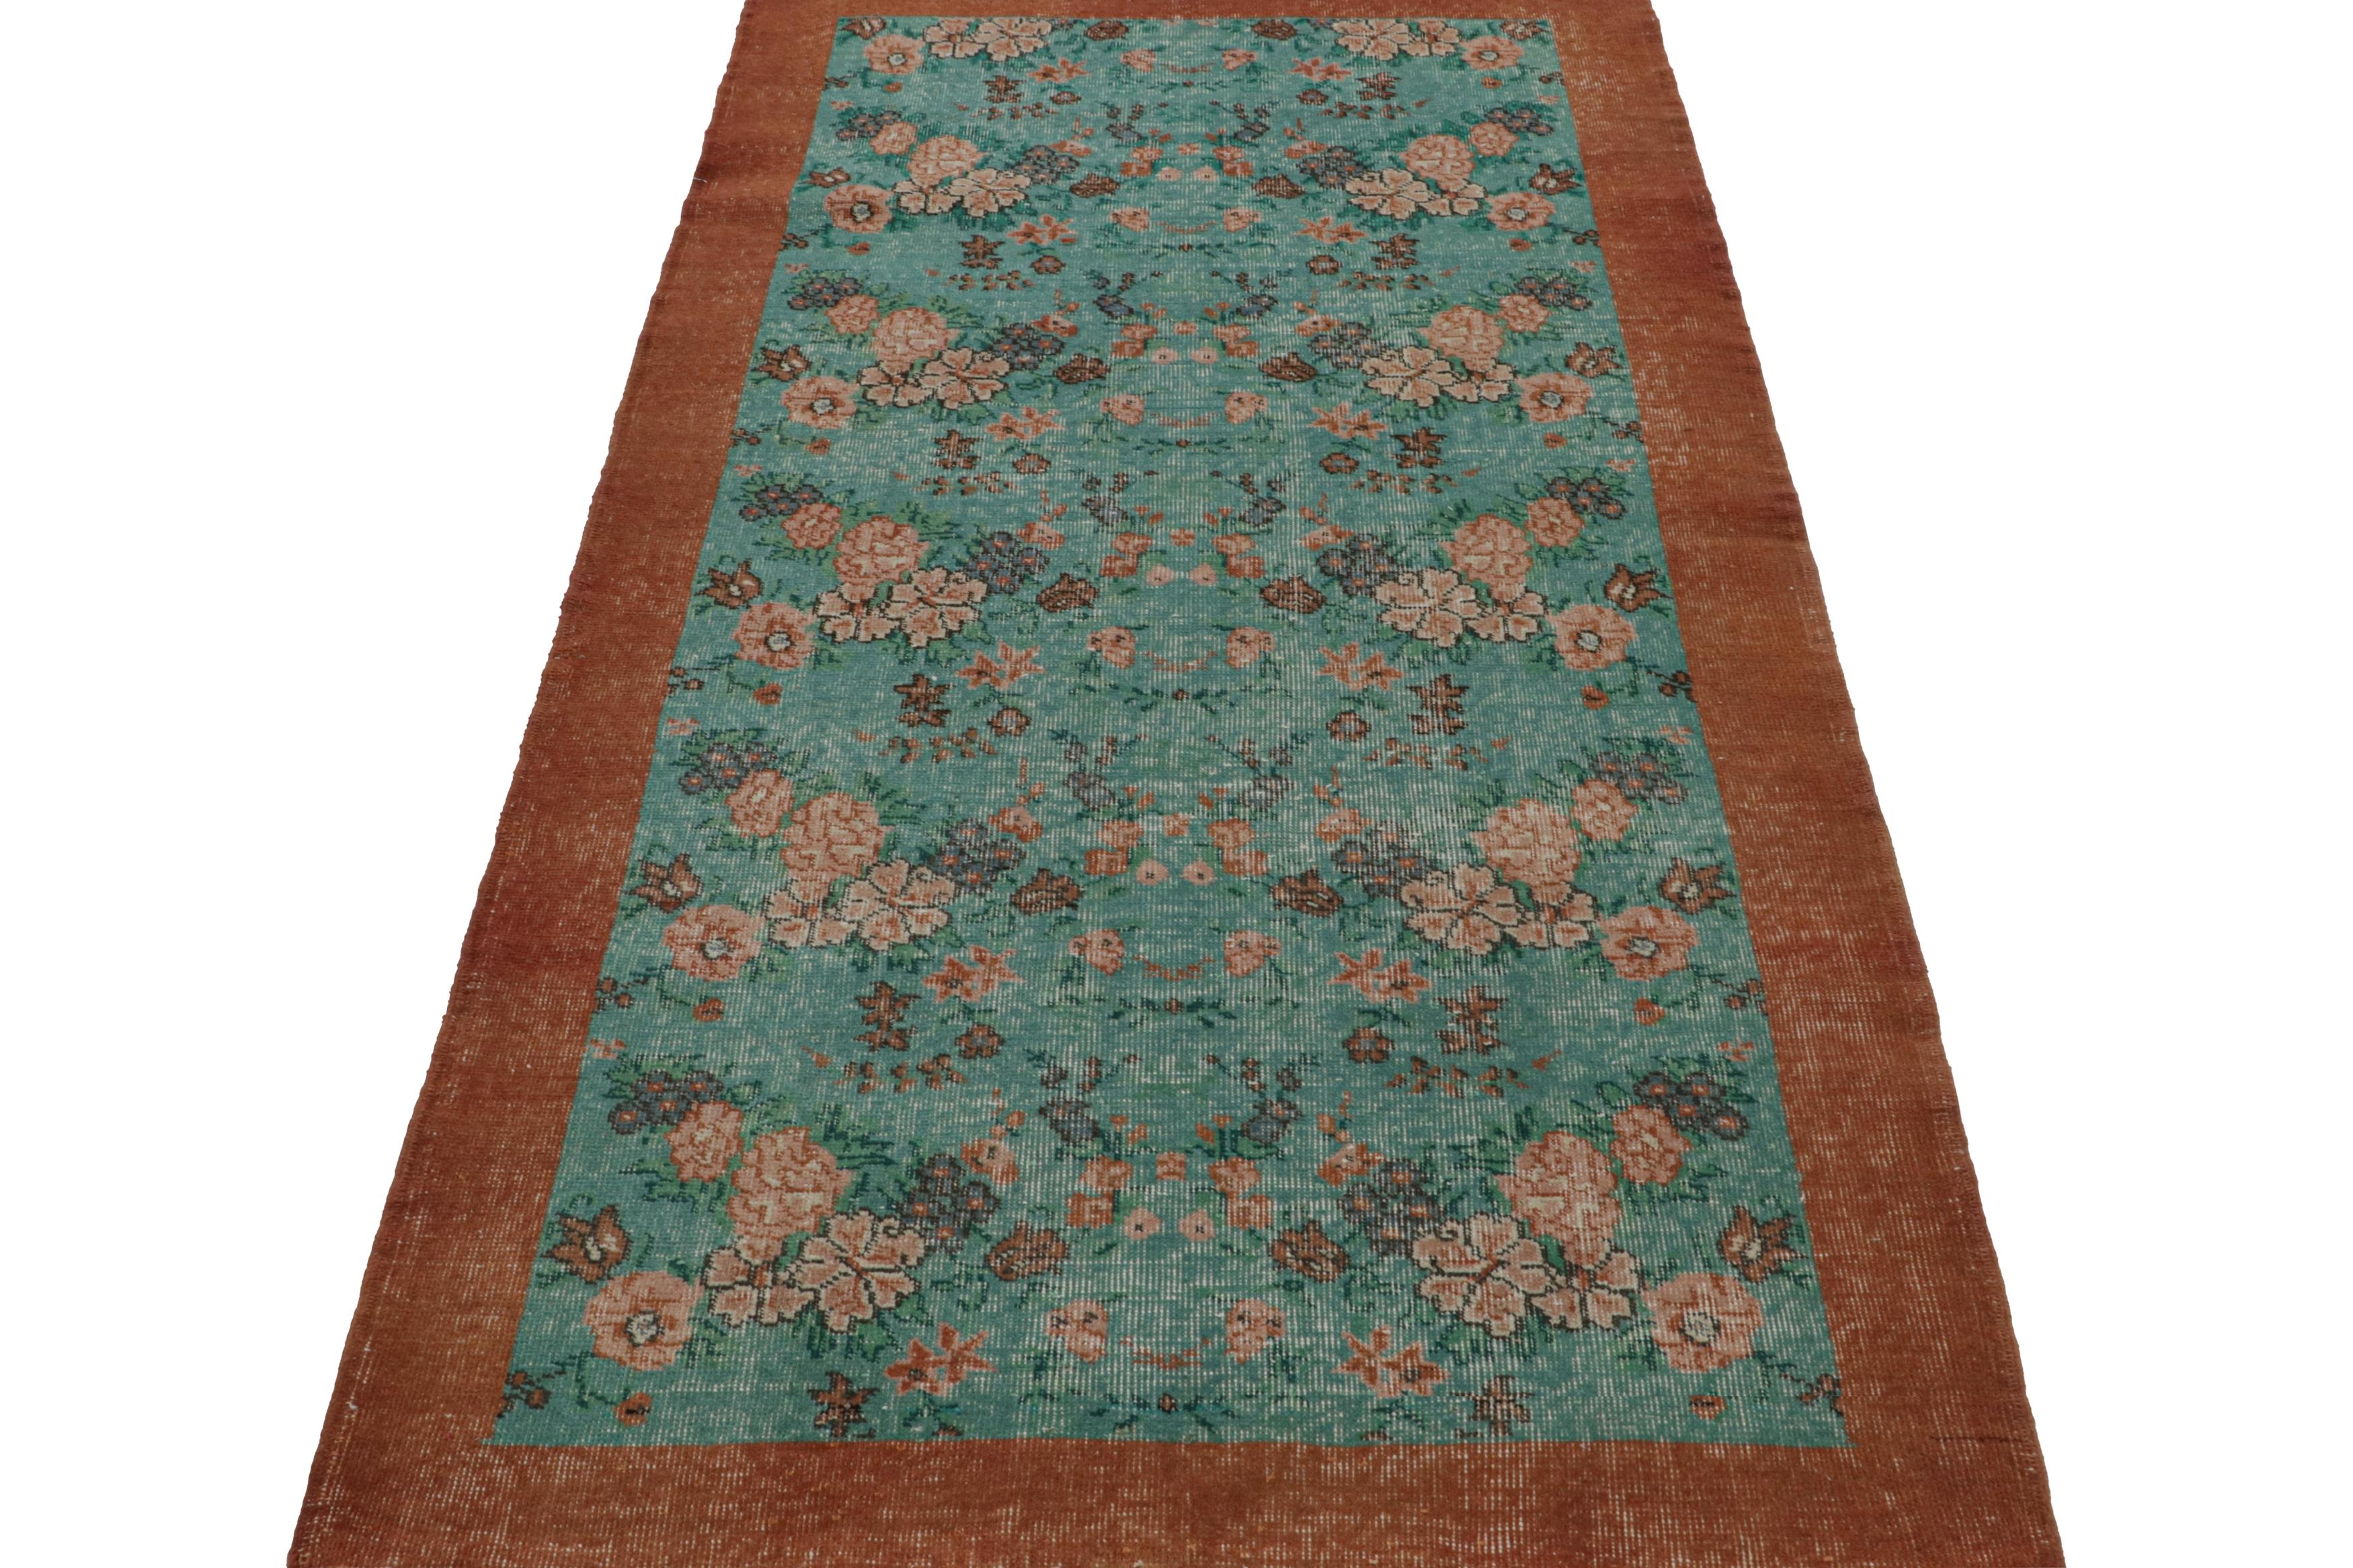 Turkish Vintage Zeki Muren rug in Teal, with floral patterns, from Rug & Kilim For Sale